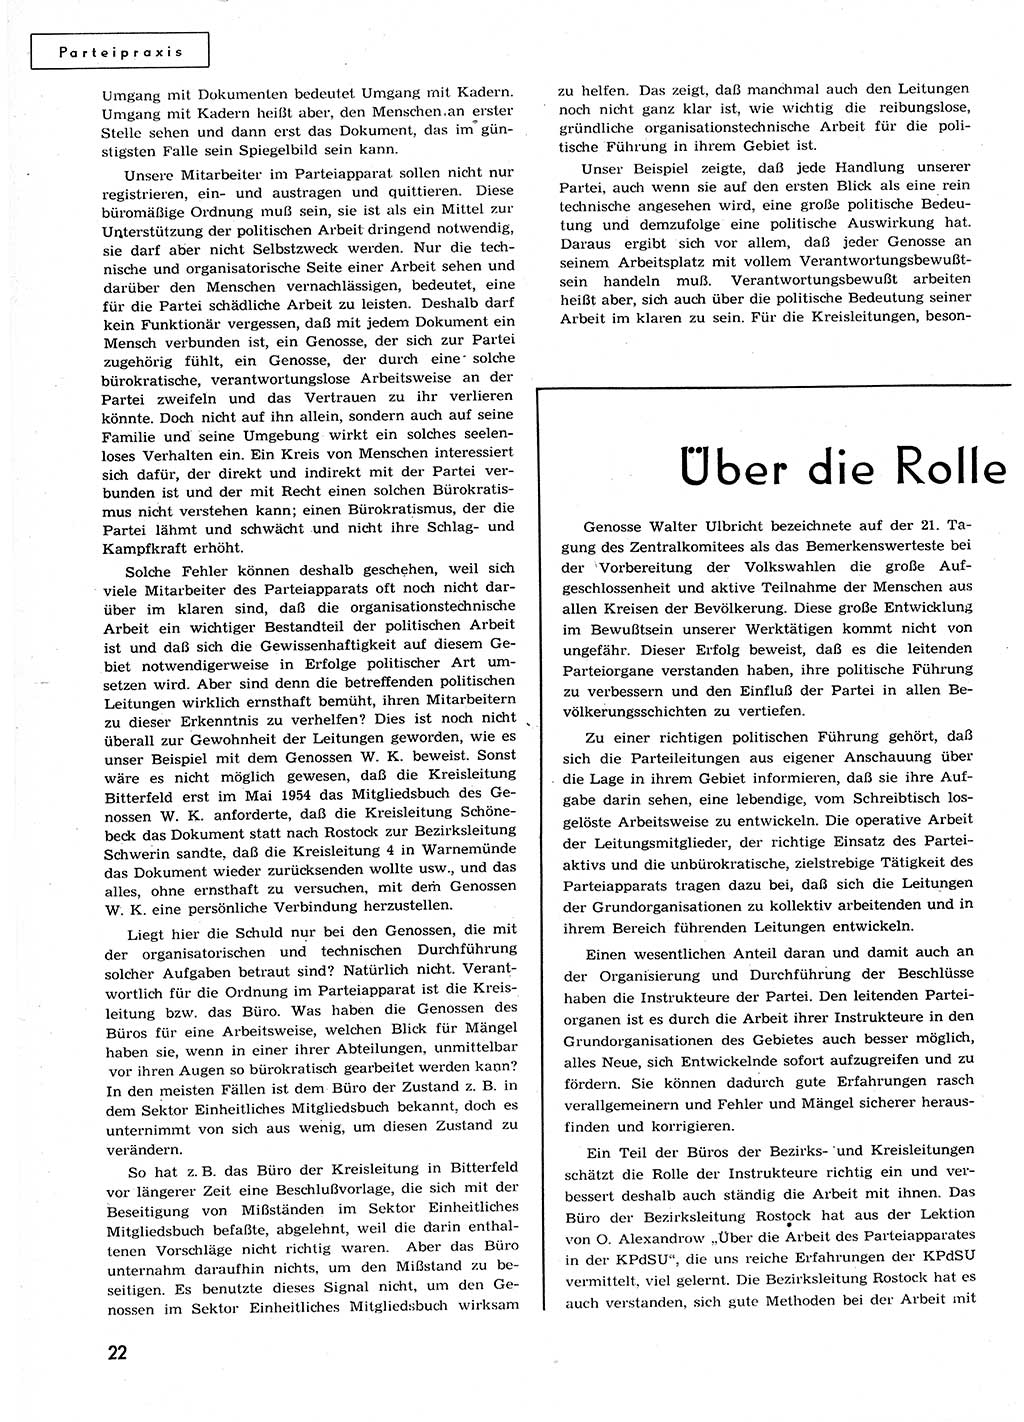 Neuer Weg (NW), Organ des Zentralkomitees (ZK) der SED (Sozialistische Einheitspartei Deutschlands) für alle Parteiarbeiter, 9. Jahrgang [Deutsche Demokratische Republik (DDR)] 1954, Heft 23/22 (NW ZK SED DDR 1954, H. 23/22)